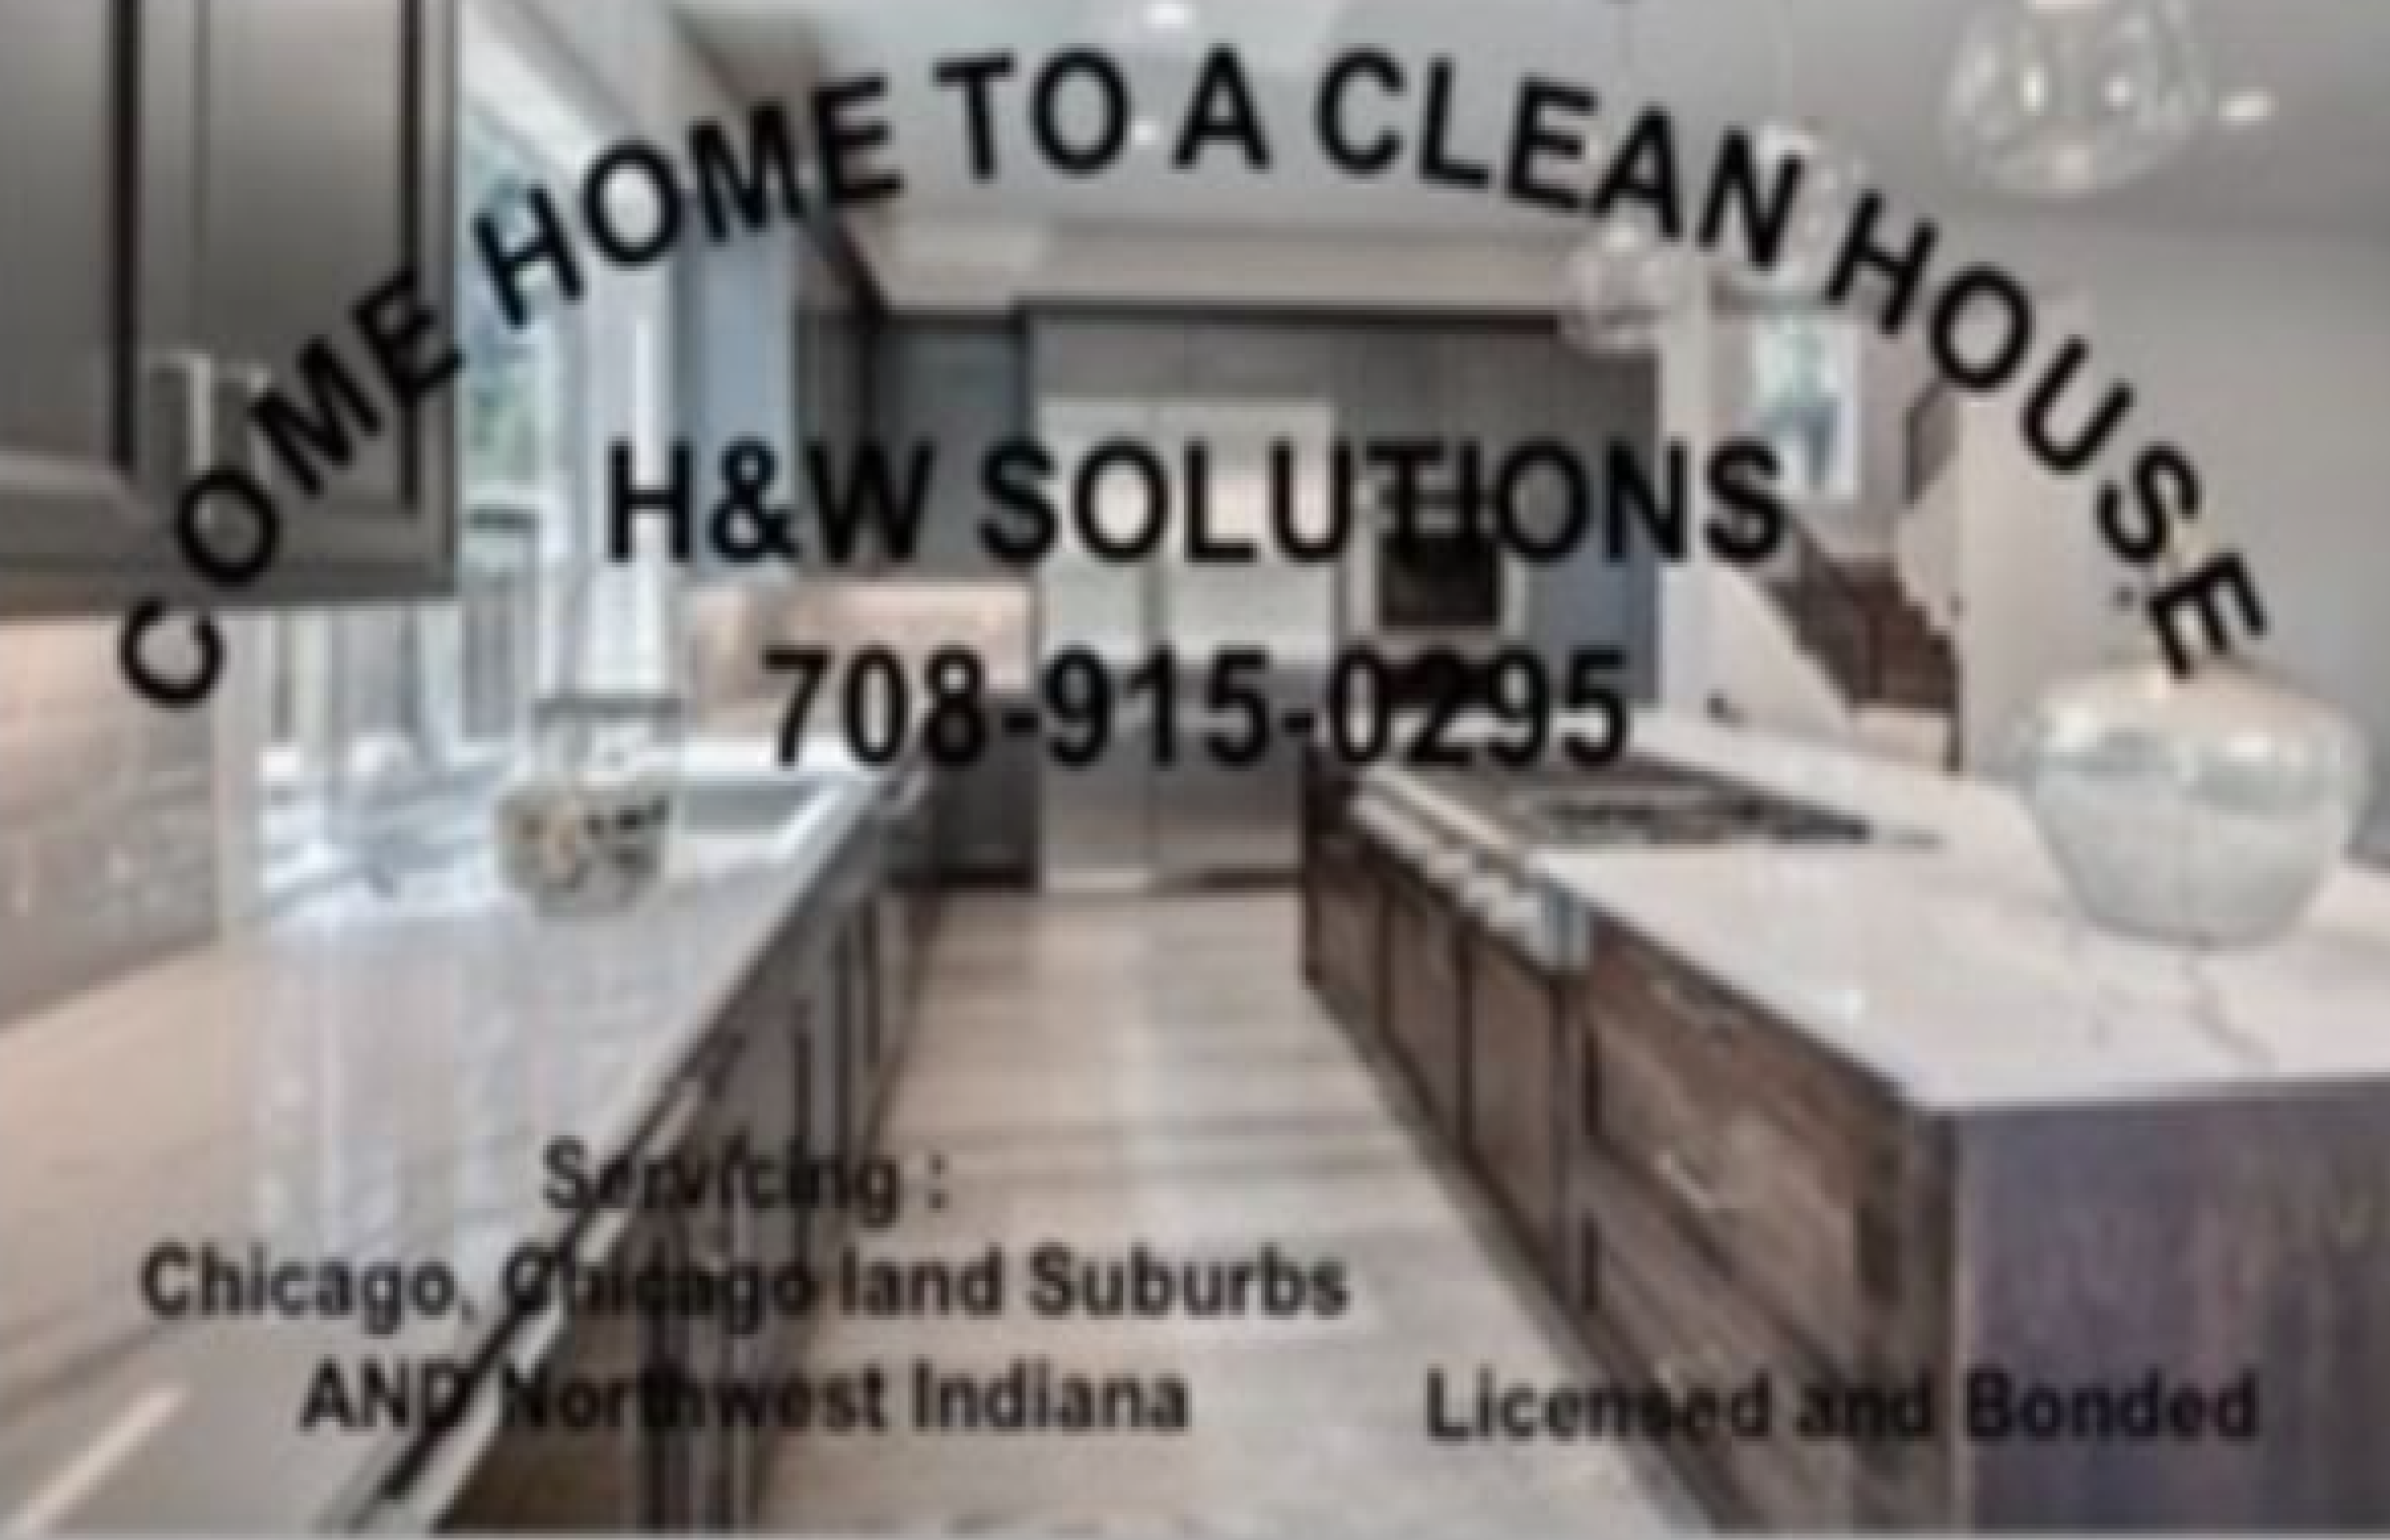 H&W Solutions, LLC Logo